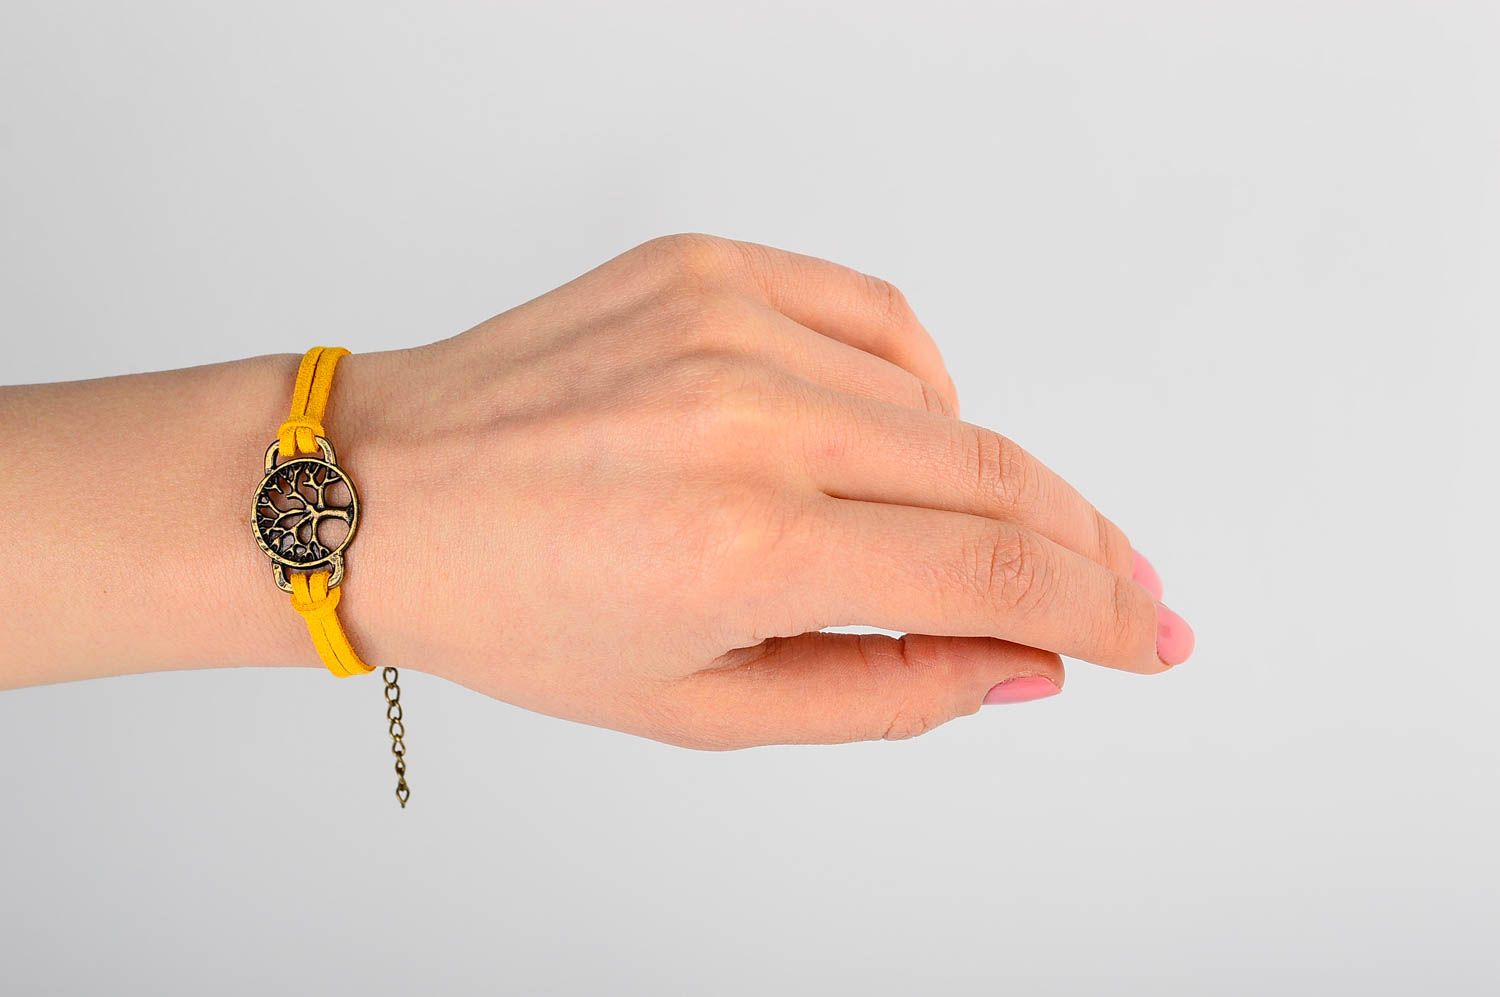 Кожаный браслет хэнд мэйд браслет на руку желтый яркий украшение из кожи фото 2